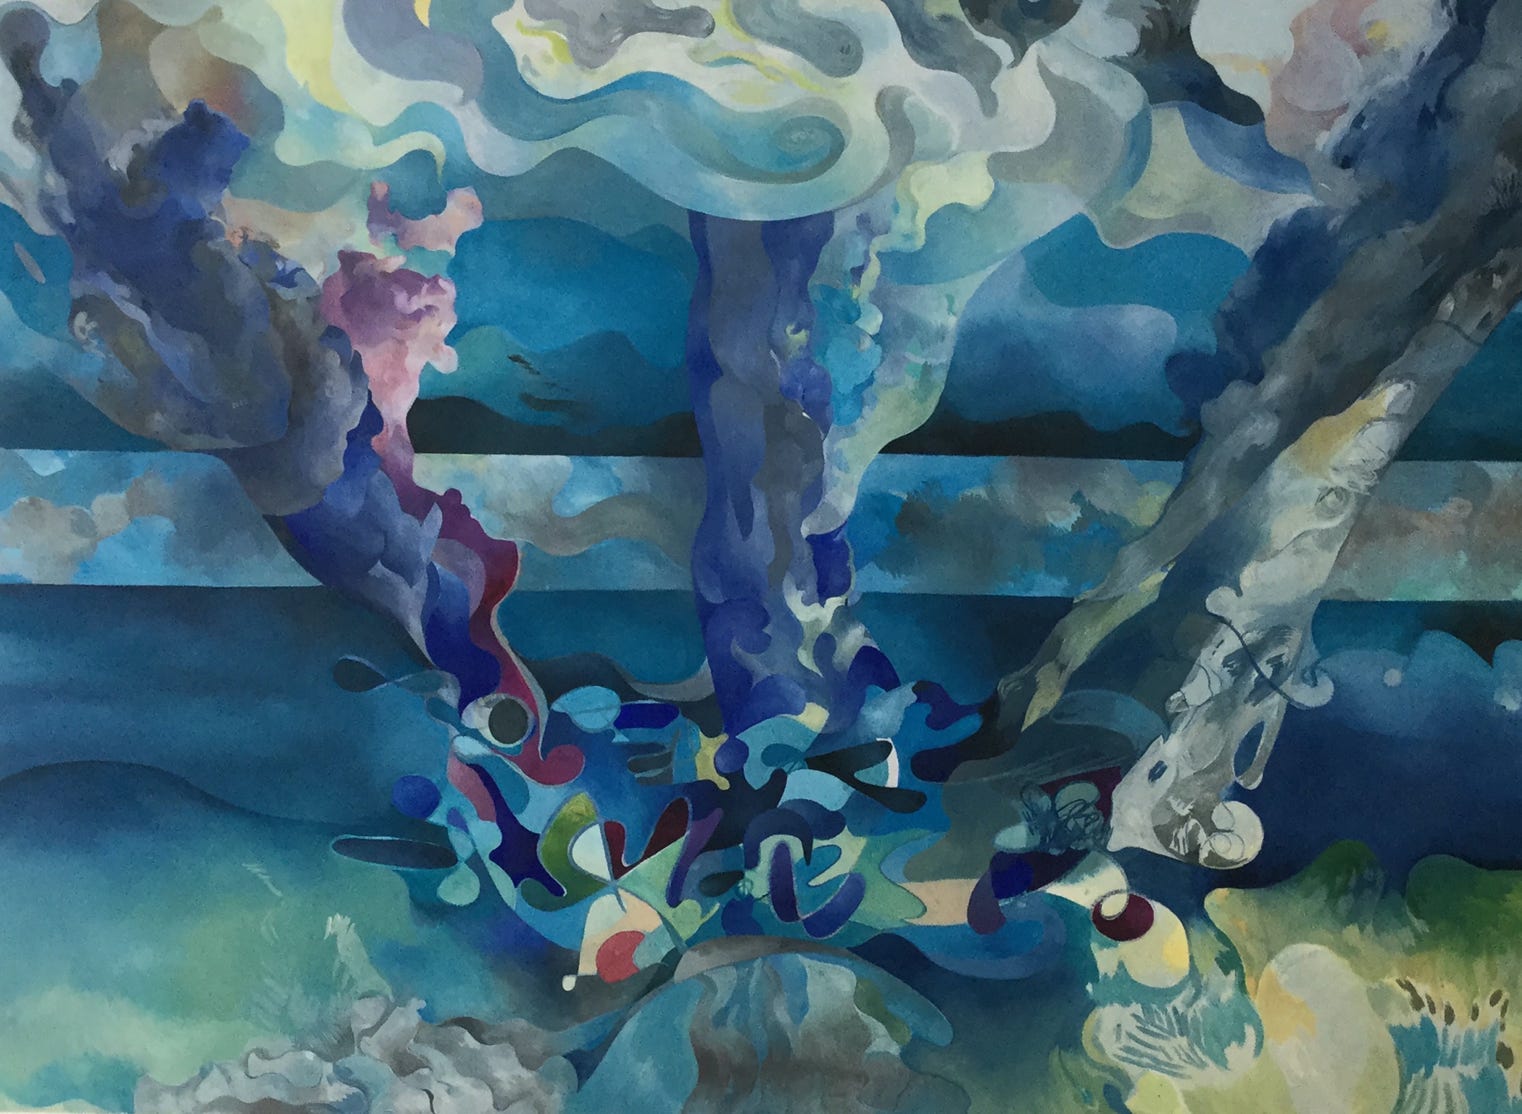 Four rivers, 2017 – 130 cm x 95 cm, oil on canvas